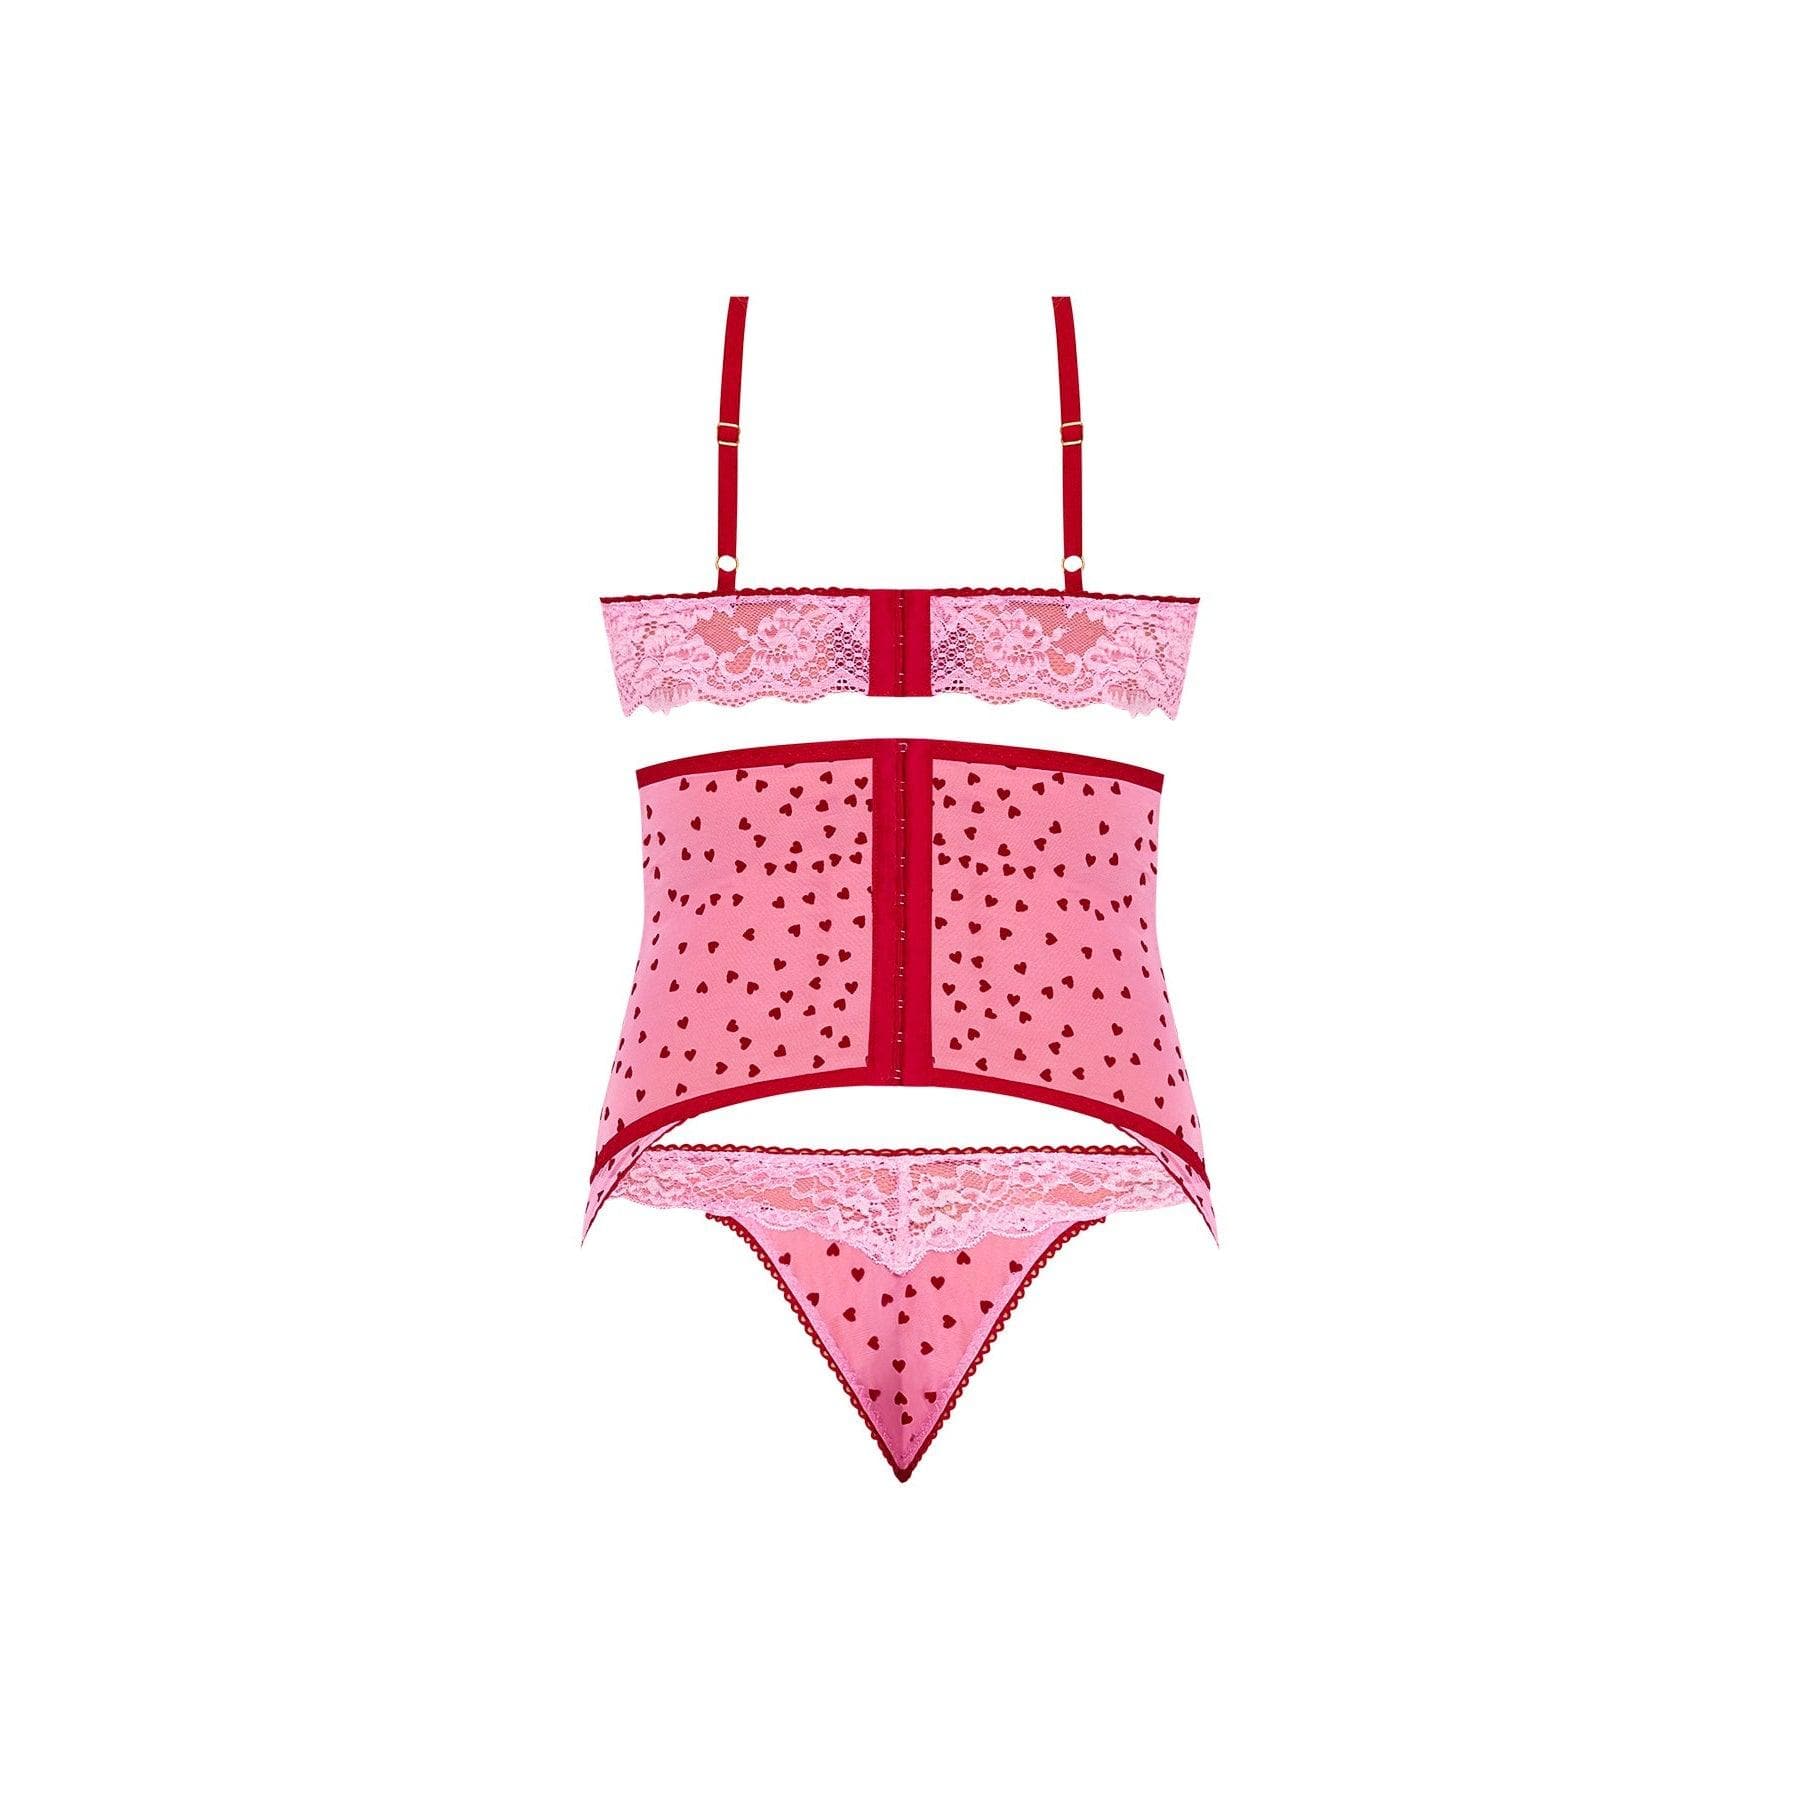 Magic Silk Tickled Pink High-Neck Bra, Gartered Waist Cincher & Thong Set Pink - Romantic Blessings